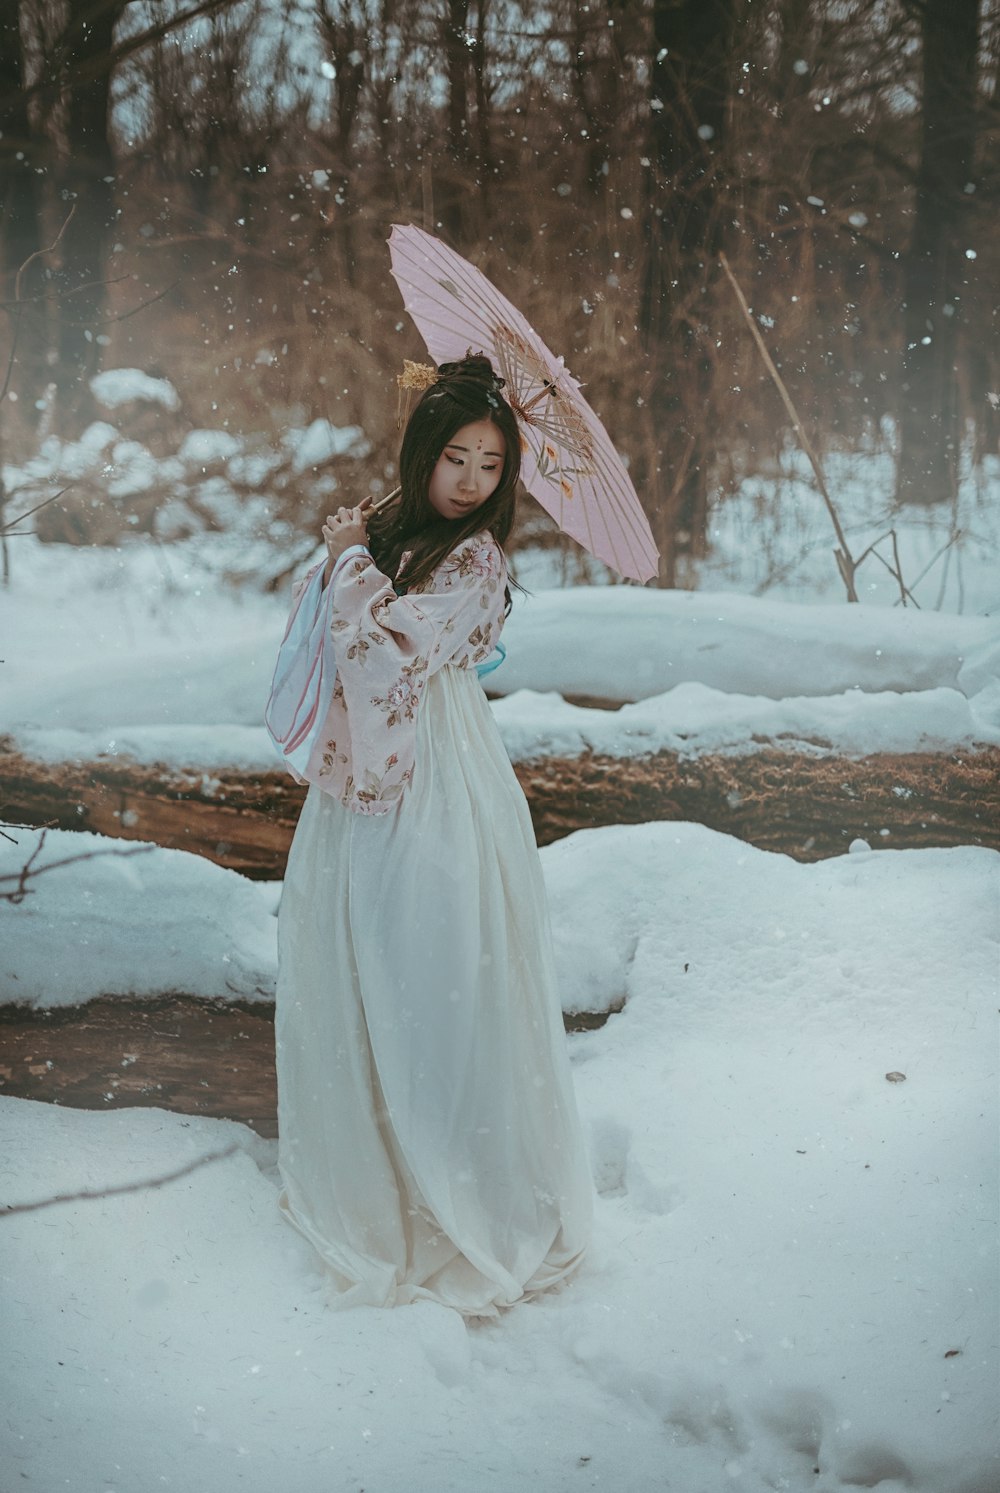 uma mulher em um vestido branco segurando um guarda-chuva na neve